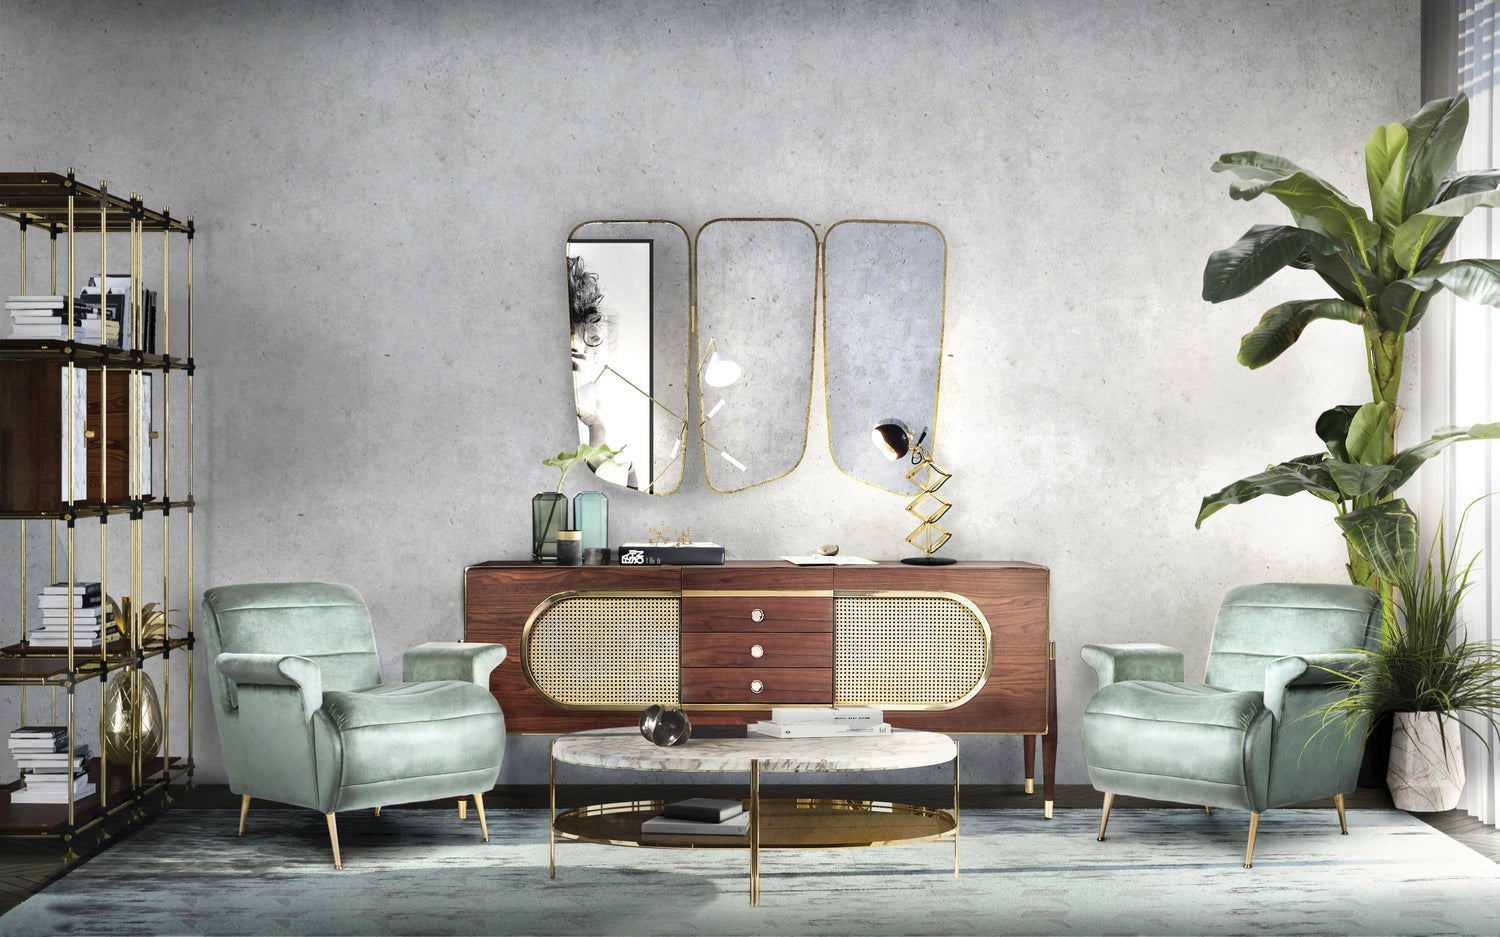 Bộ ba tấm gương với viền khung vàng đồng tạo sự liên kết với các món đồ nội thất trong căn phòng, khiến chúng trở thành một thể thống nhất.